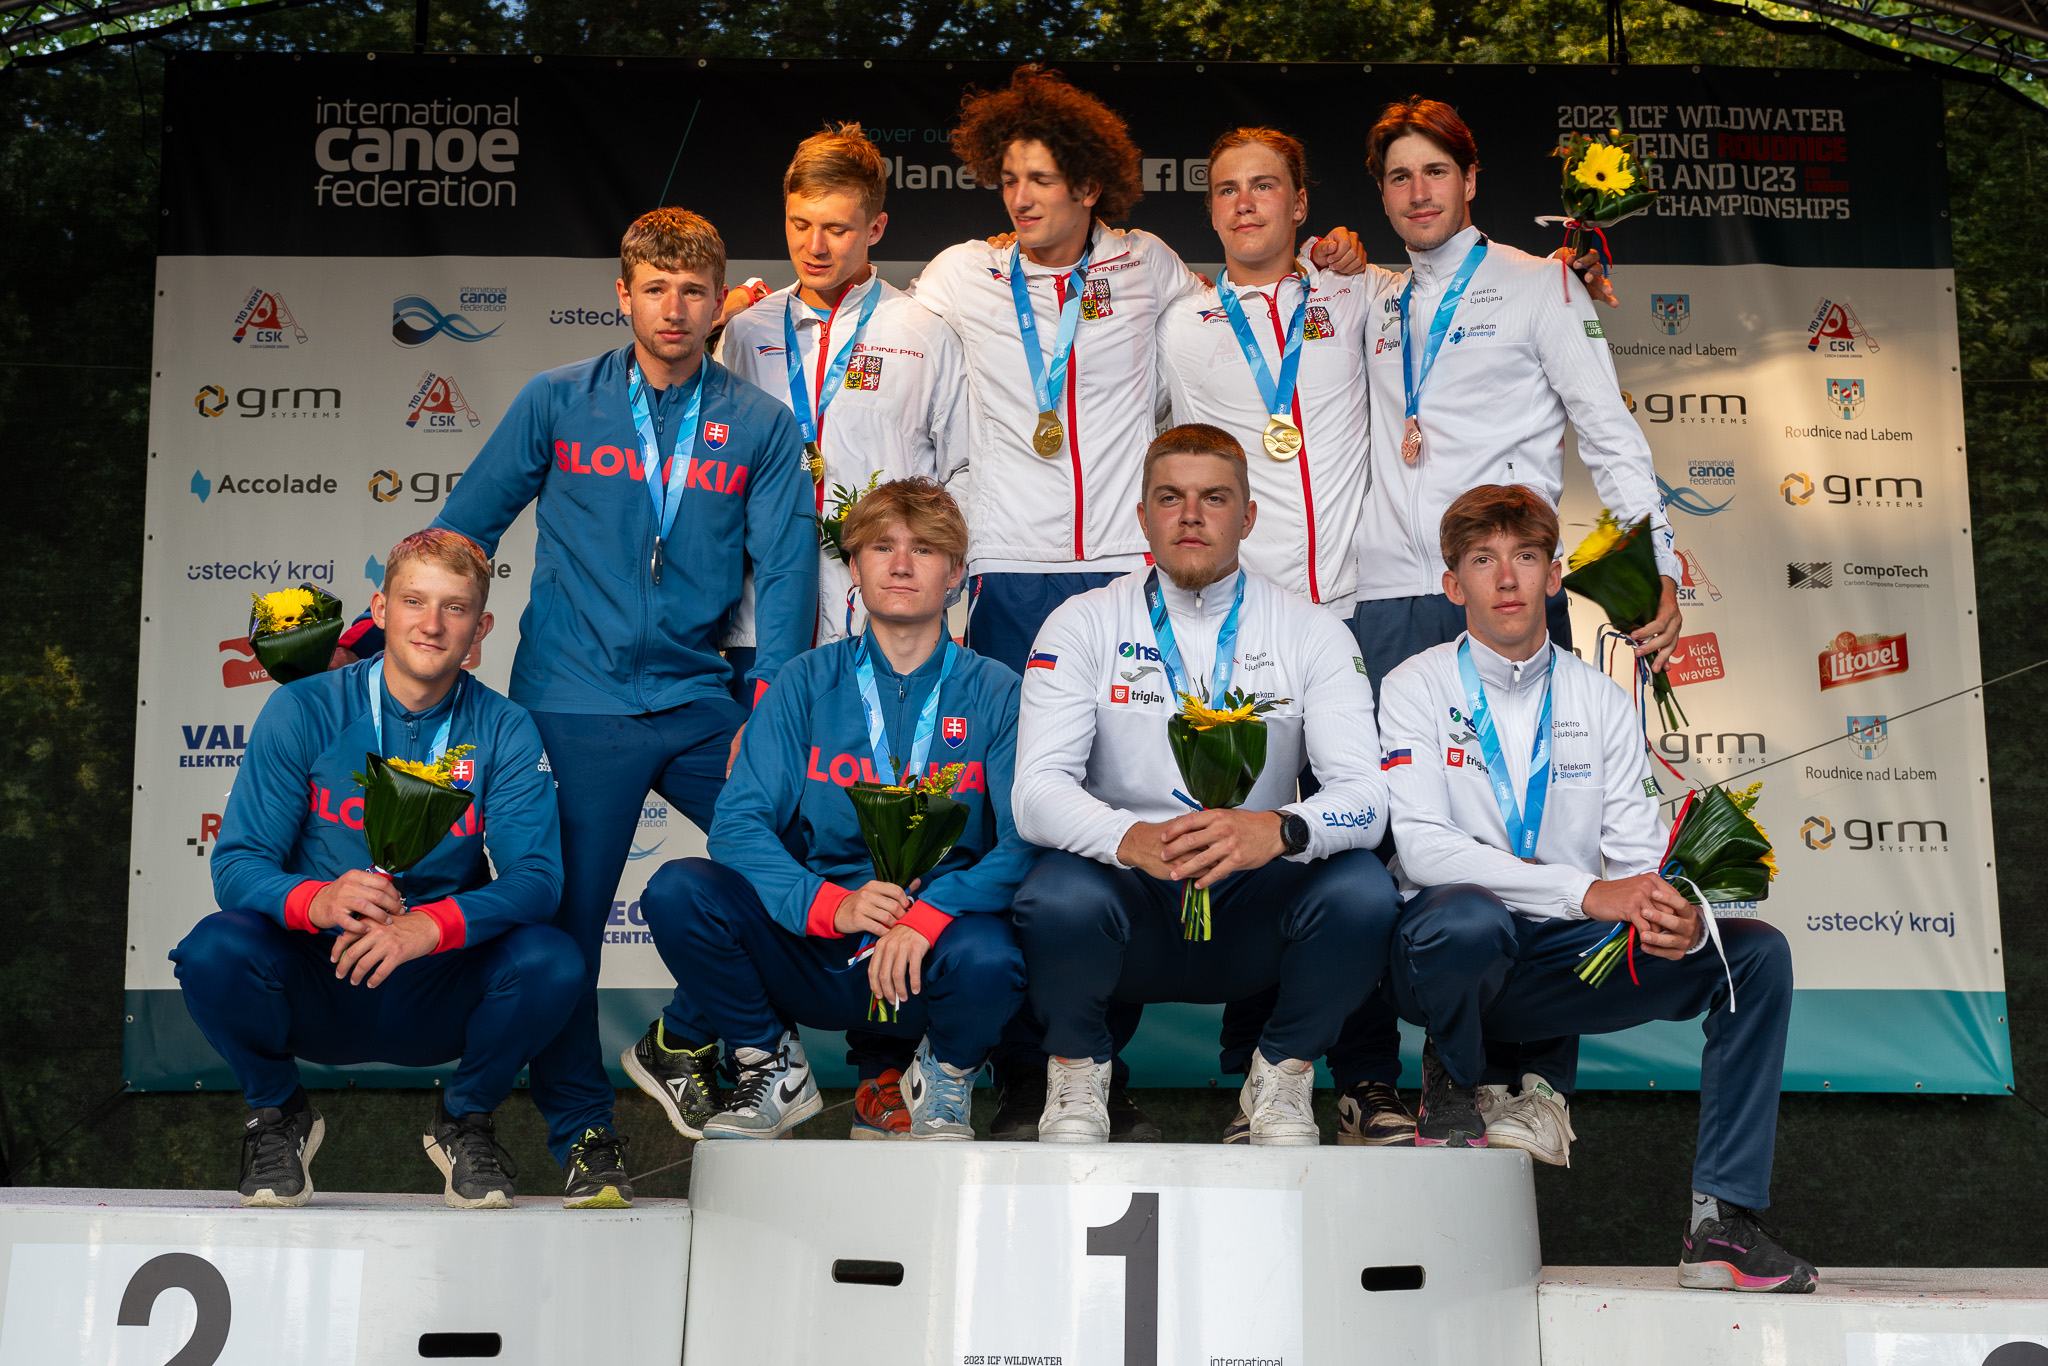 Strieborné medaily v tímovom šprinte pre Slovensko